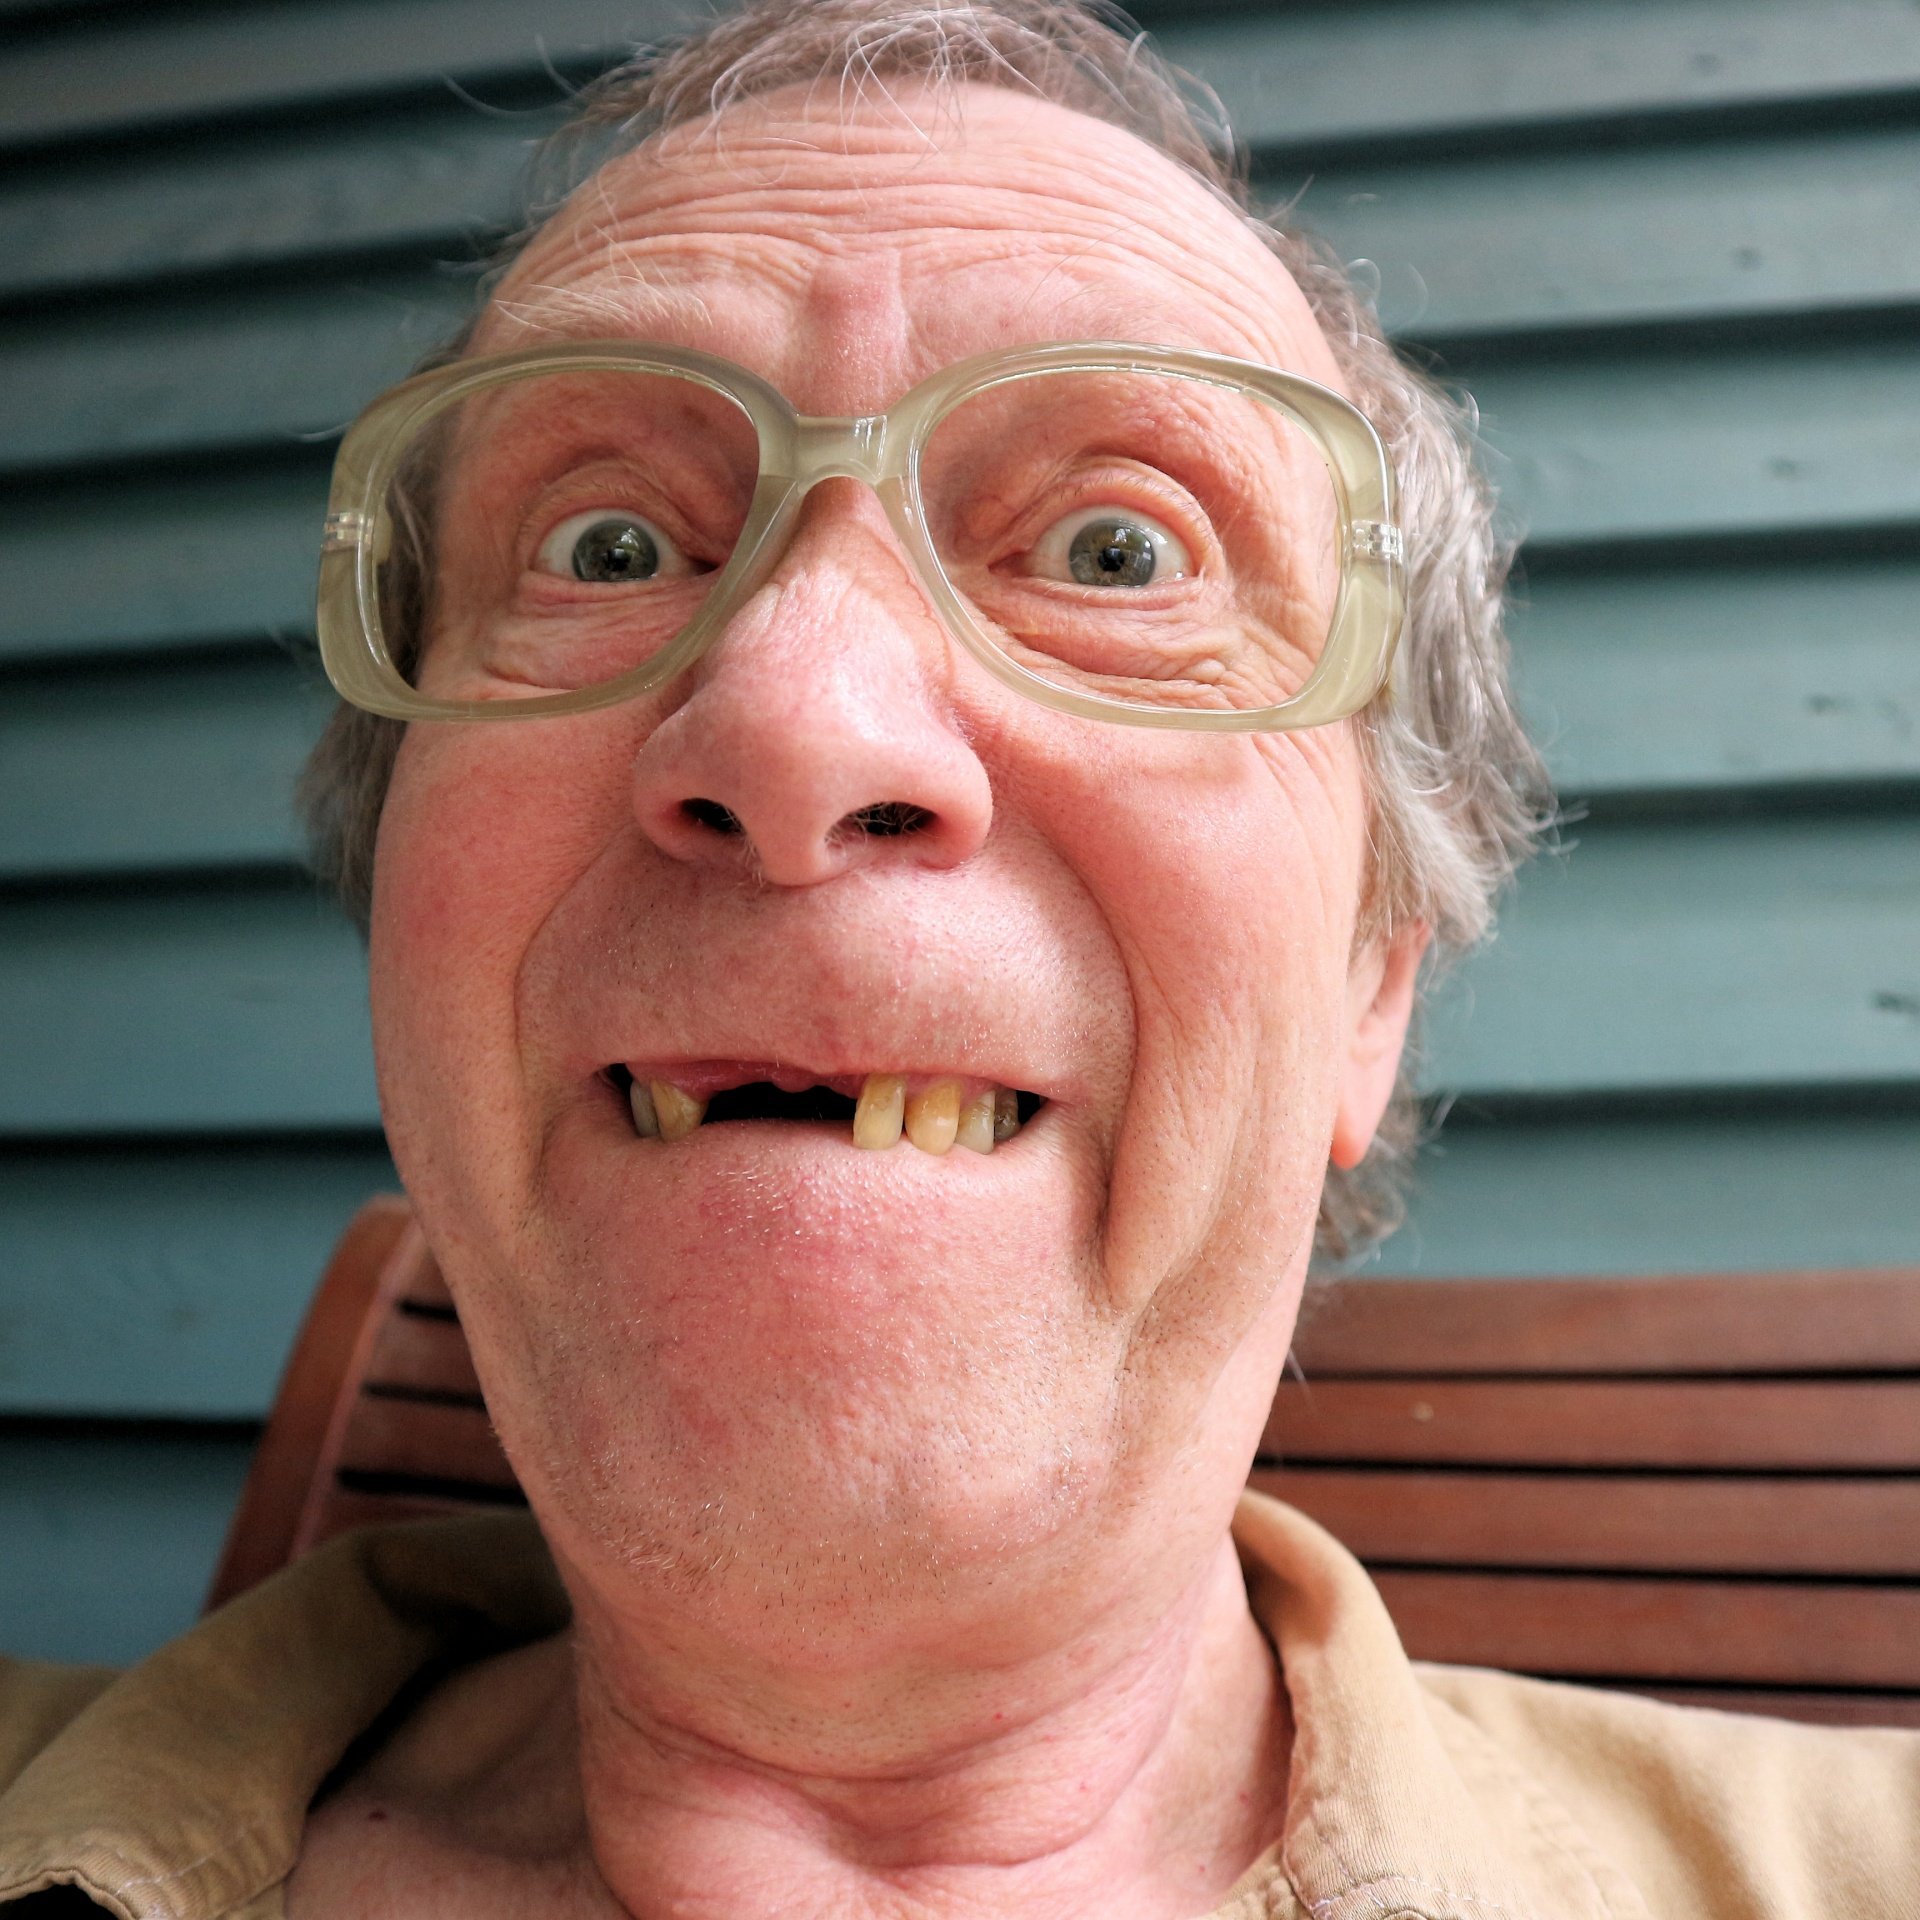 Hombre mayor con ausencia de dos dientes frontales. | Imagen: Needpix.com